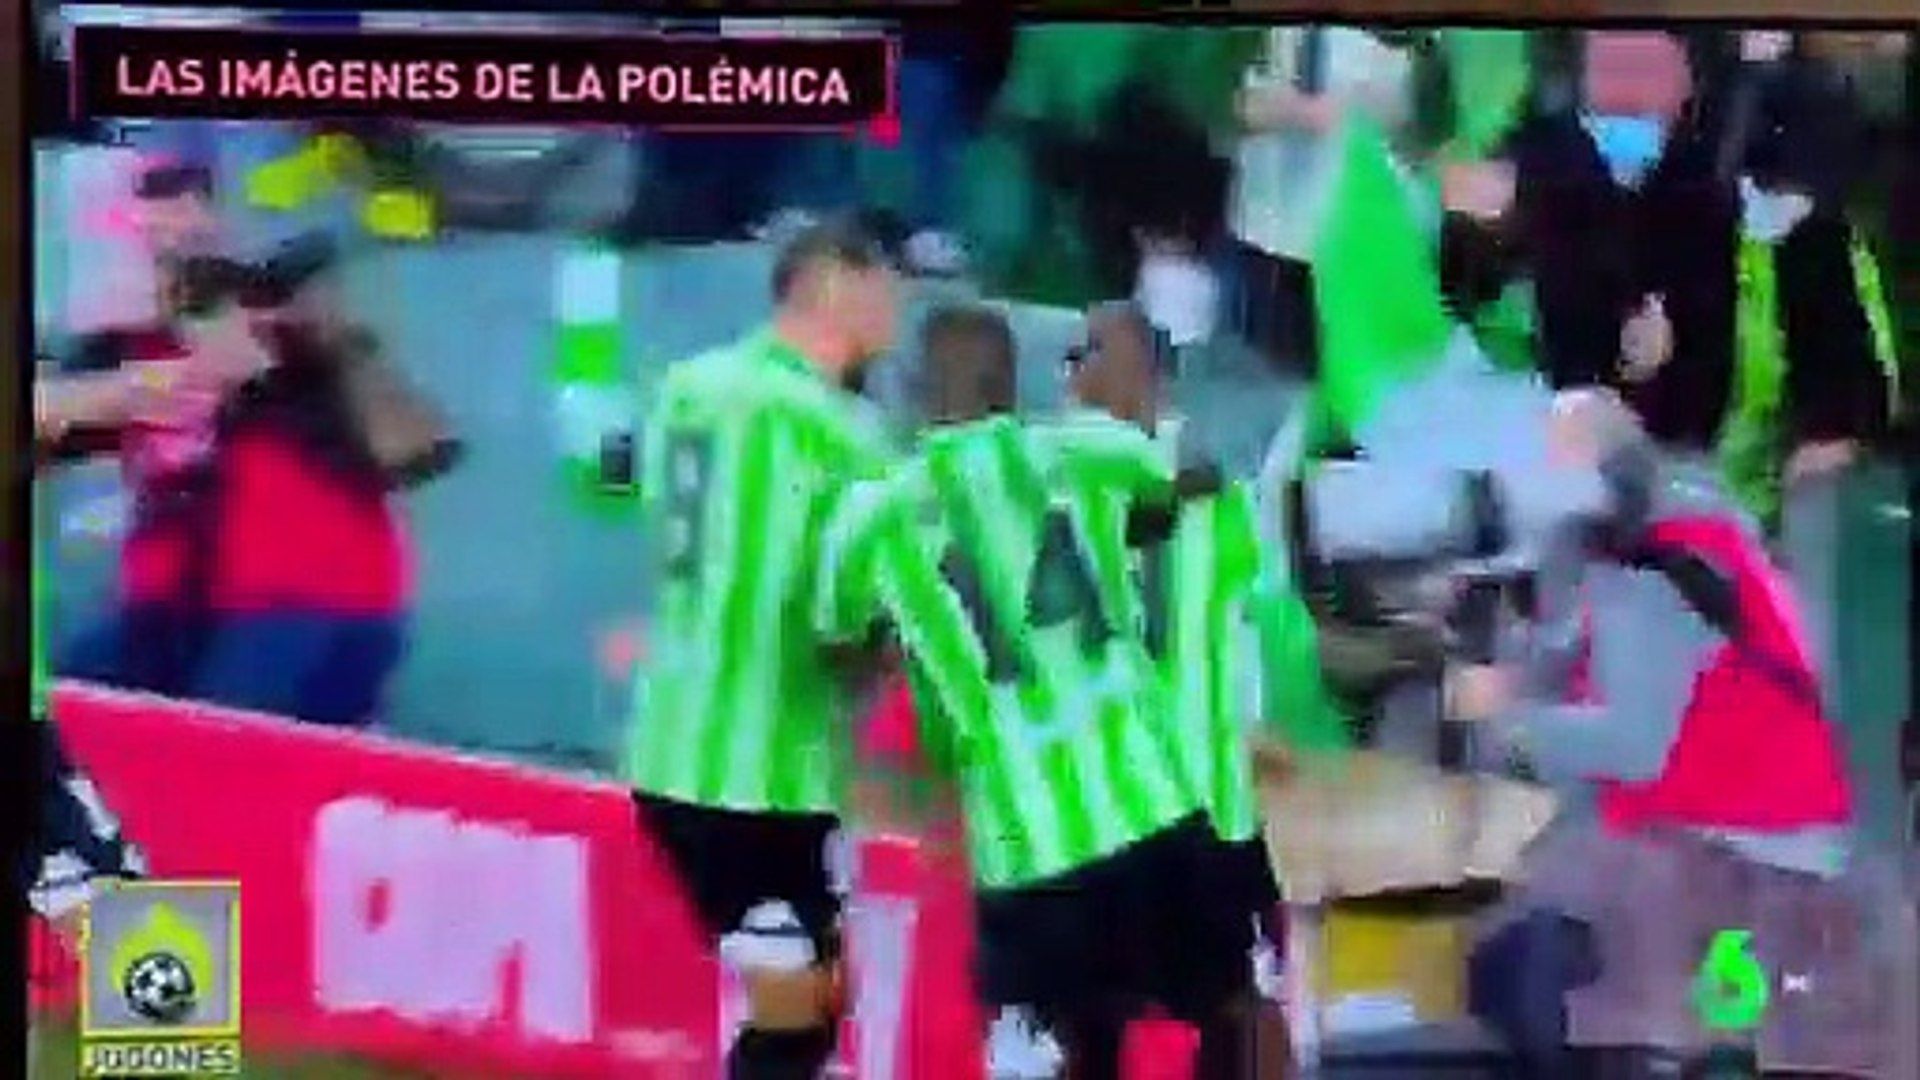 Un vídeo de laSexta ofrece dudas sobre los motivos para suspender el Betis-Sevilla y señala a Lopetegui